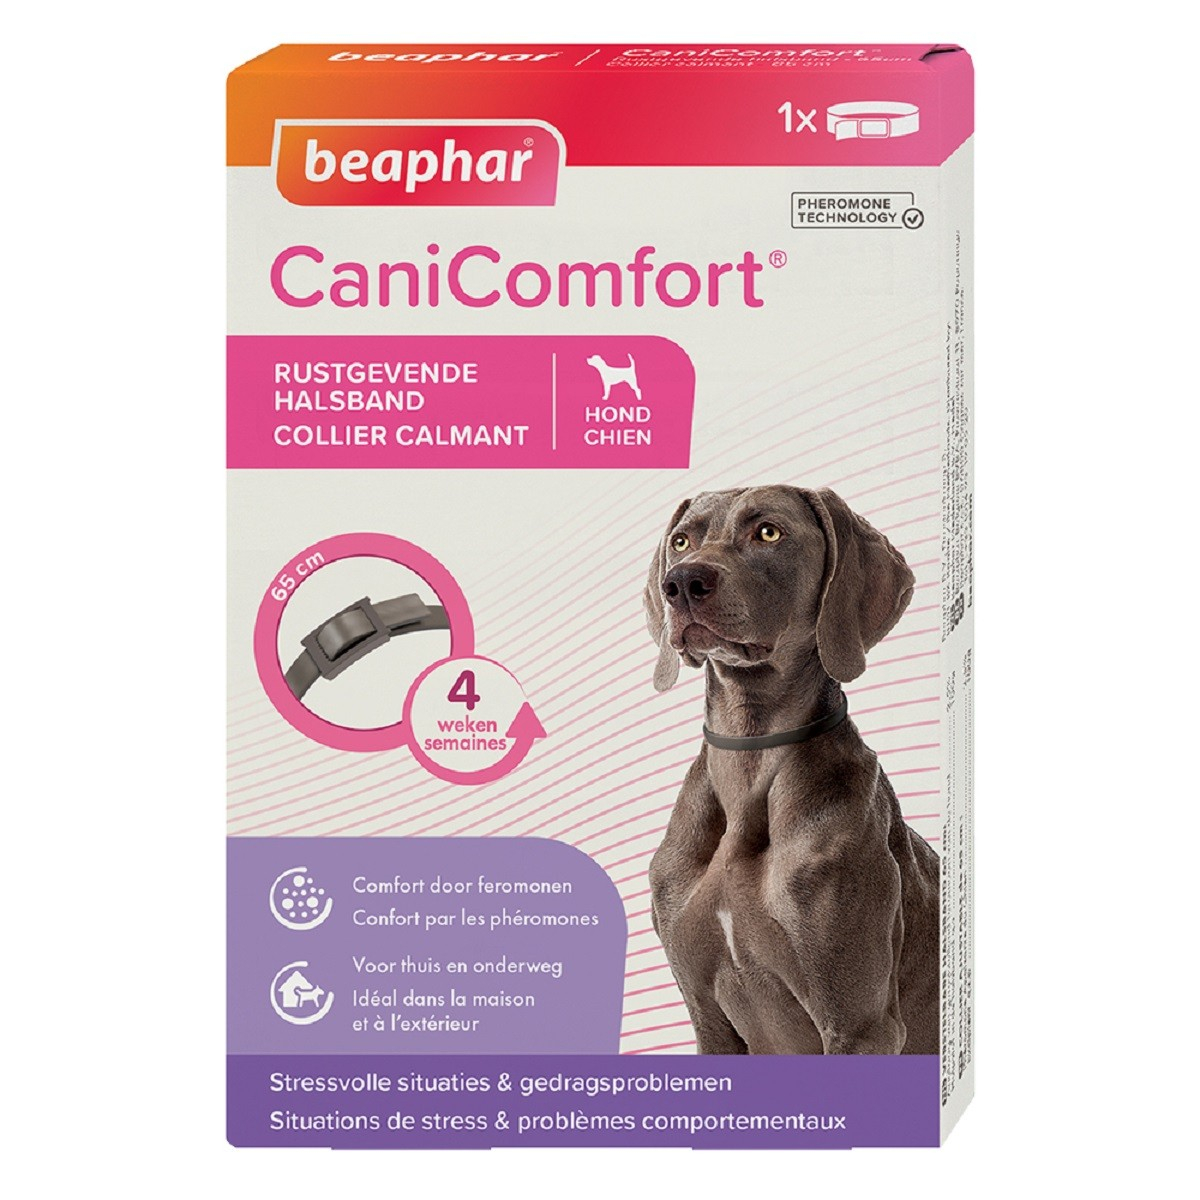 CaniComfort, Beruhigendes Halsband mit Pheromonen für Hund und Welpen